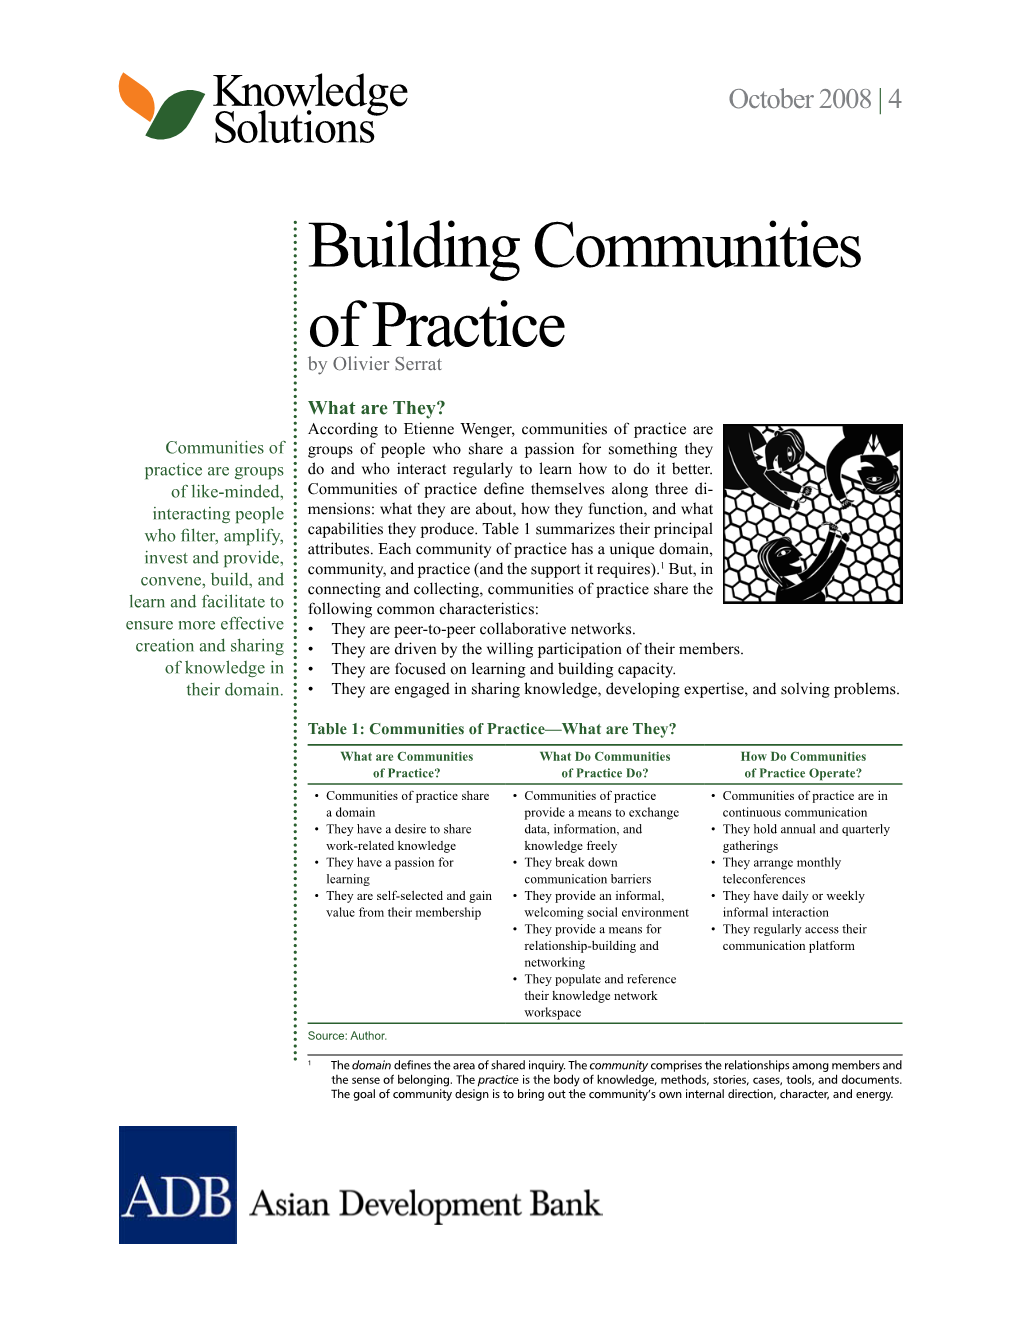 Building Communities of Practice by Olivier Serrat